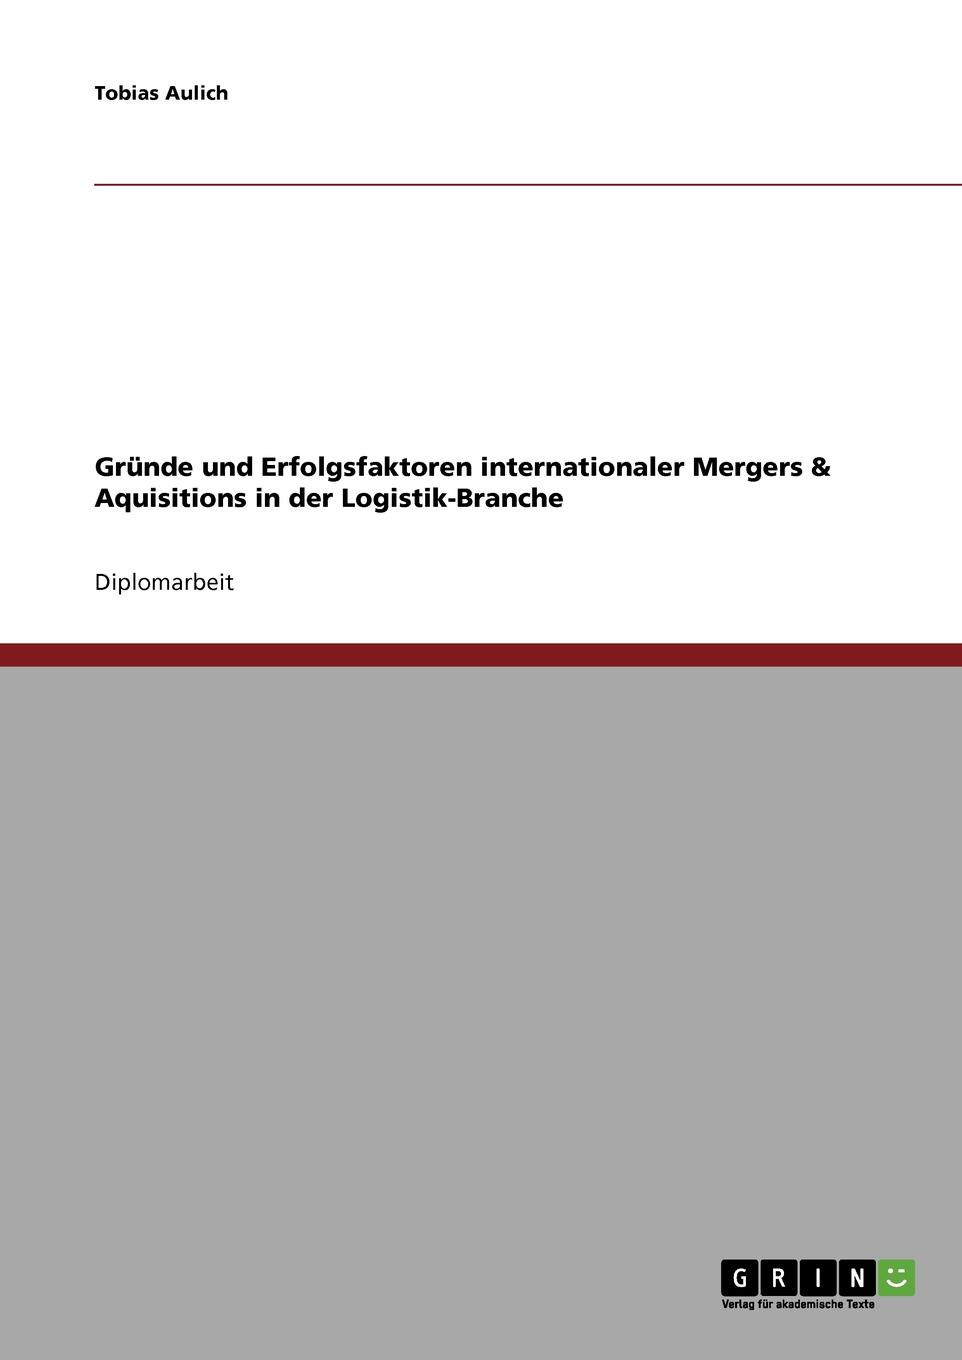 Grunde und Erfolgsfaktoren internationaler Mergers . Aquisitions in der Logistik-Branche